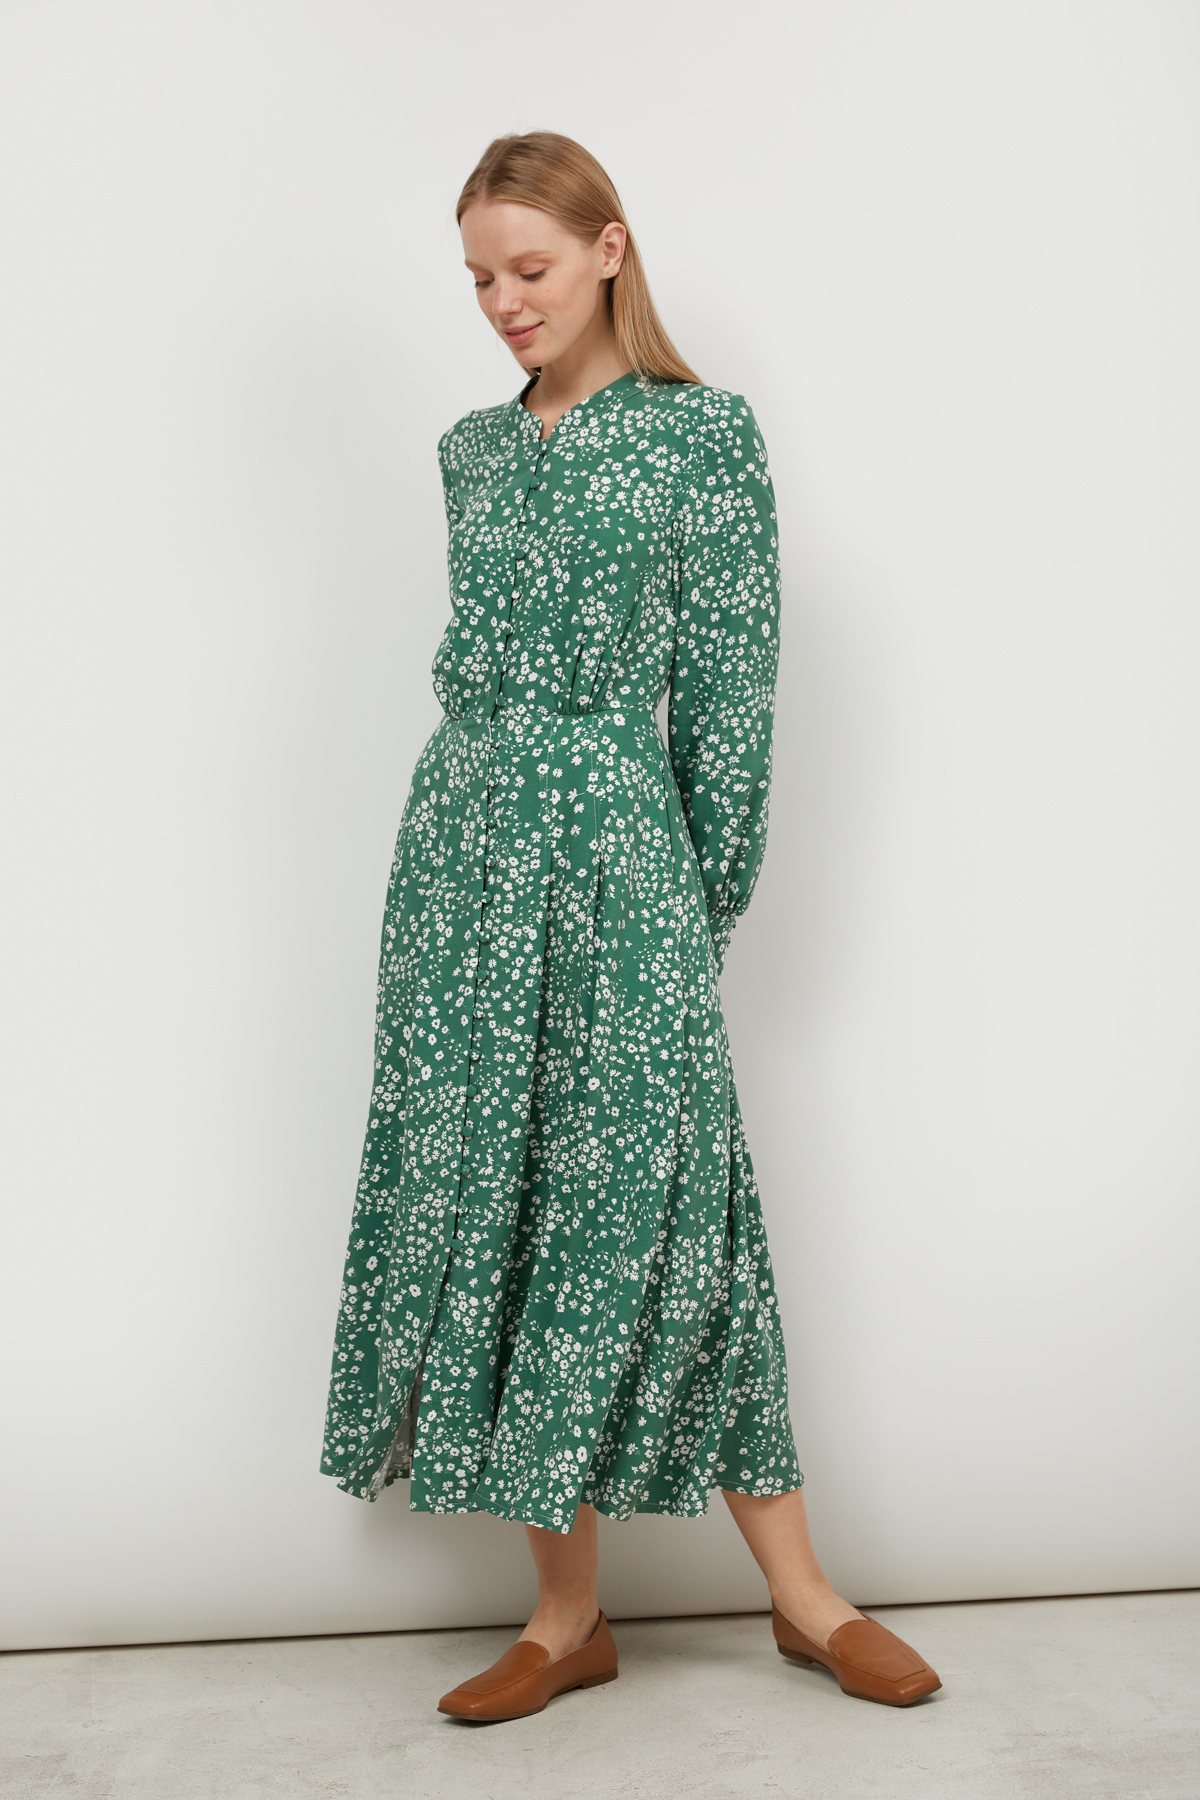 Сукня міді з віскози зелена в принт квіти, фото 1